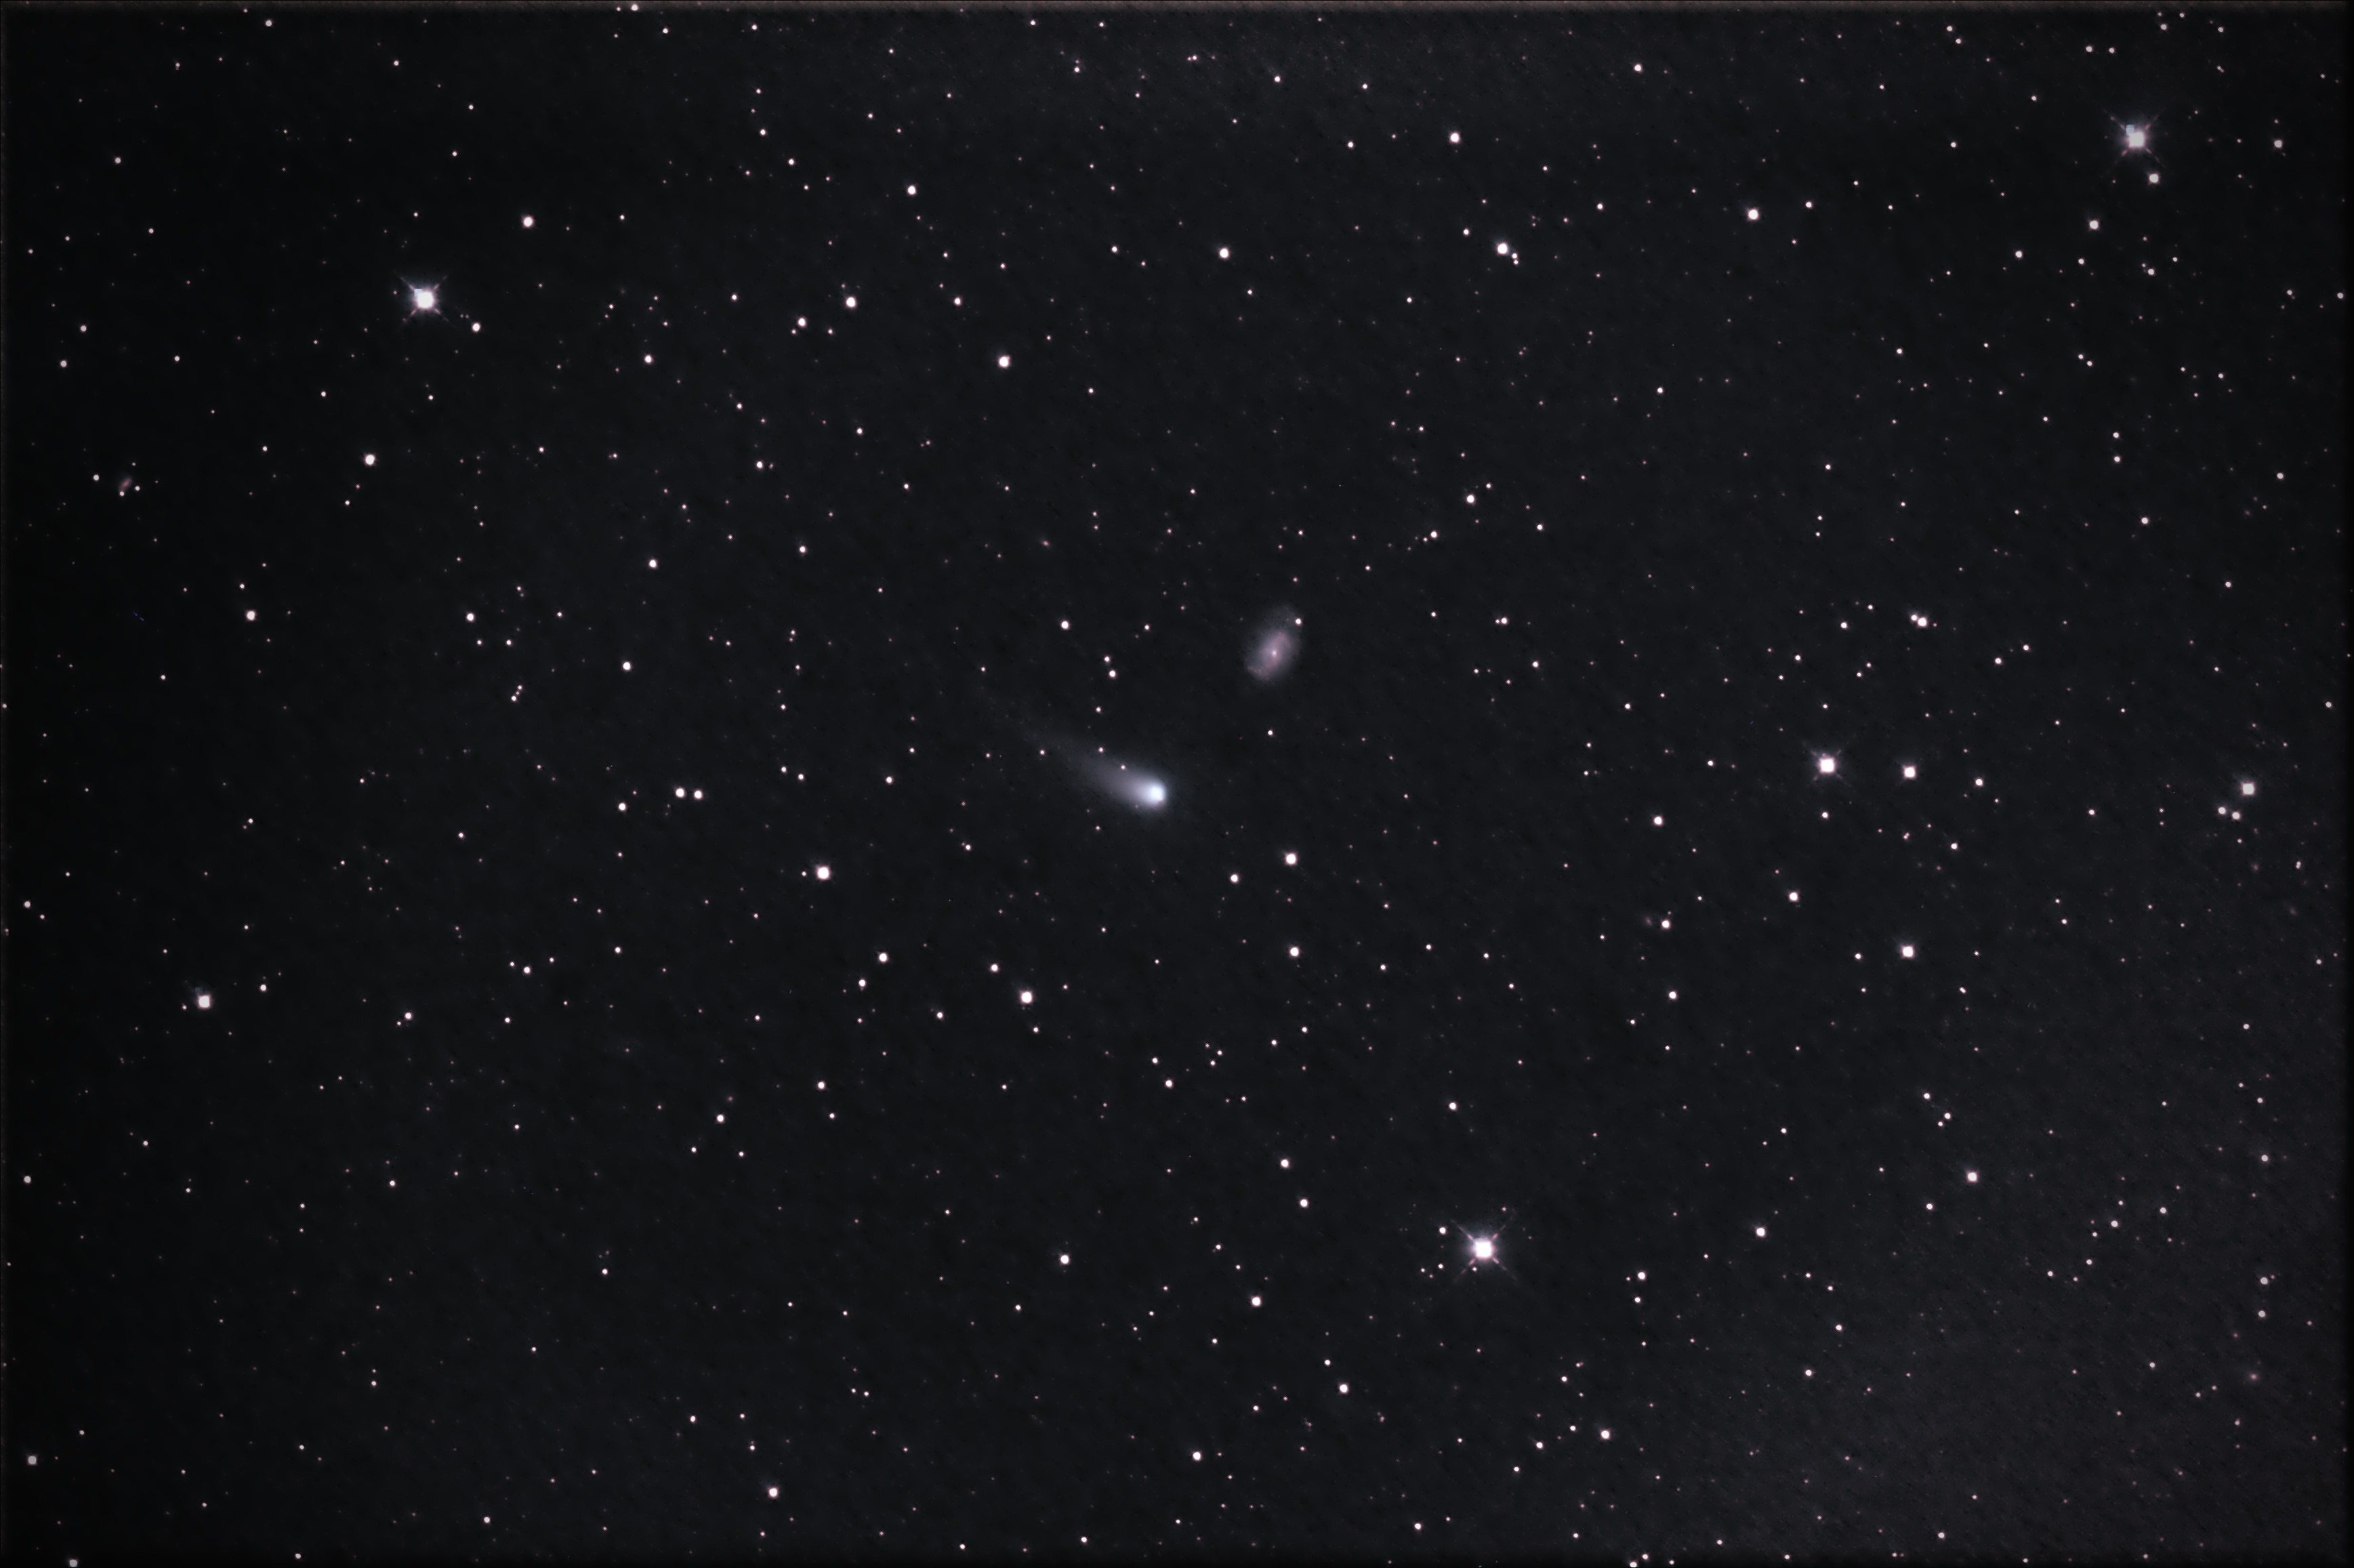 Kometa C2012 K1 cca 8.5magn. u NGC3726 v Umi dne 20.5.14